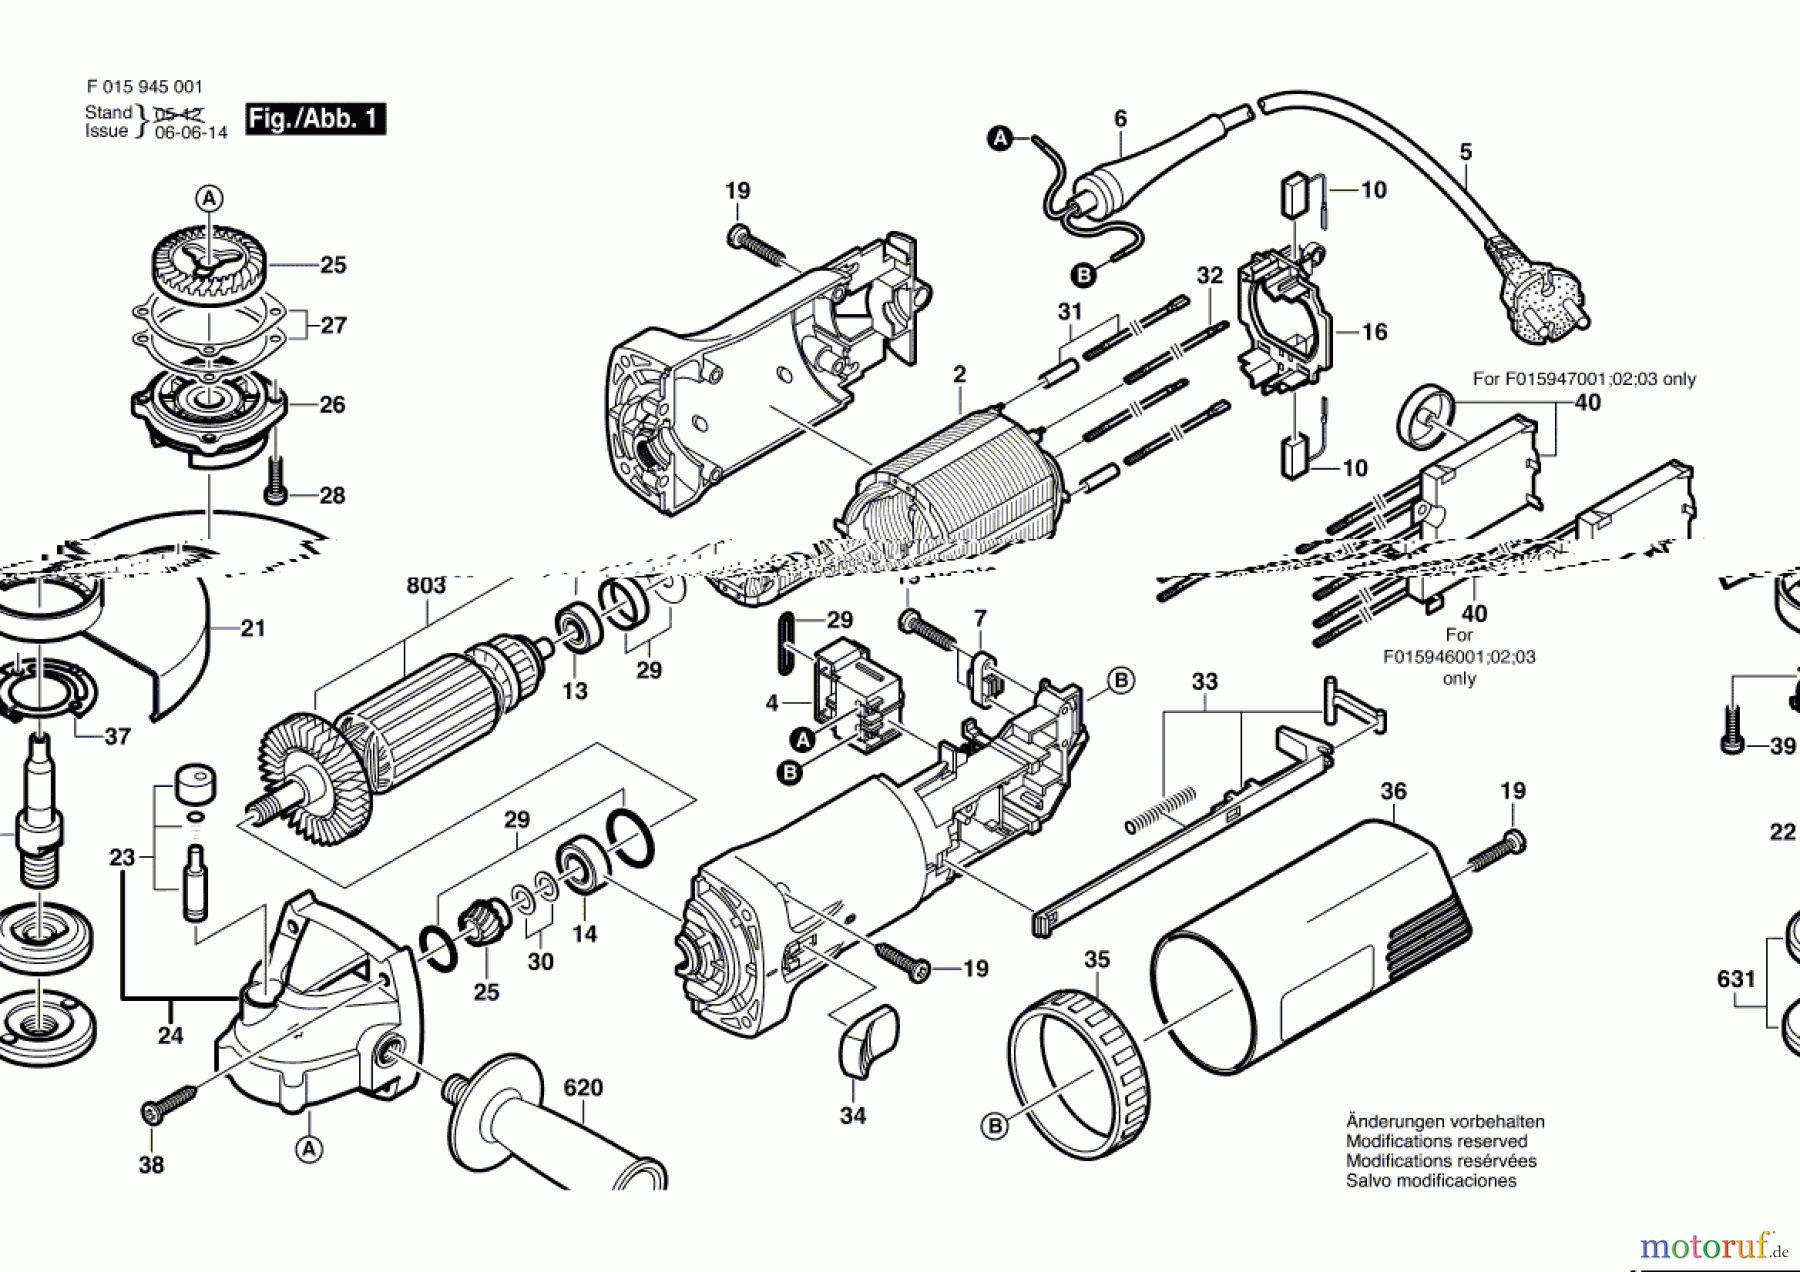  Bosch Werkzeug Winkelschleifer 9460 Seite 1